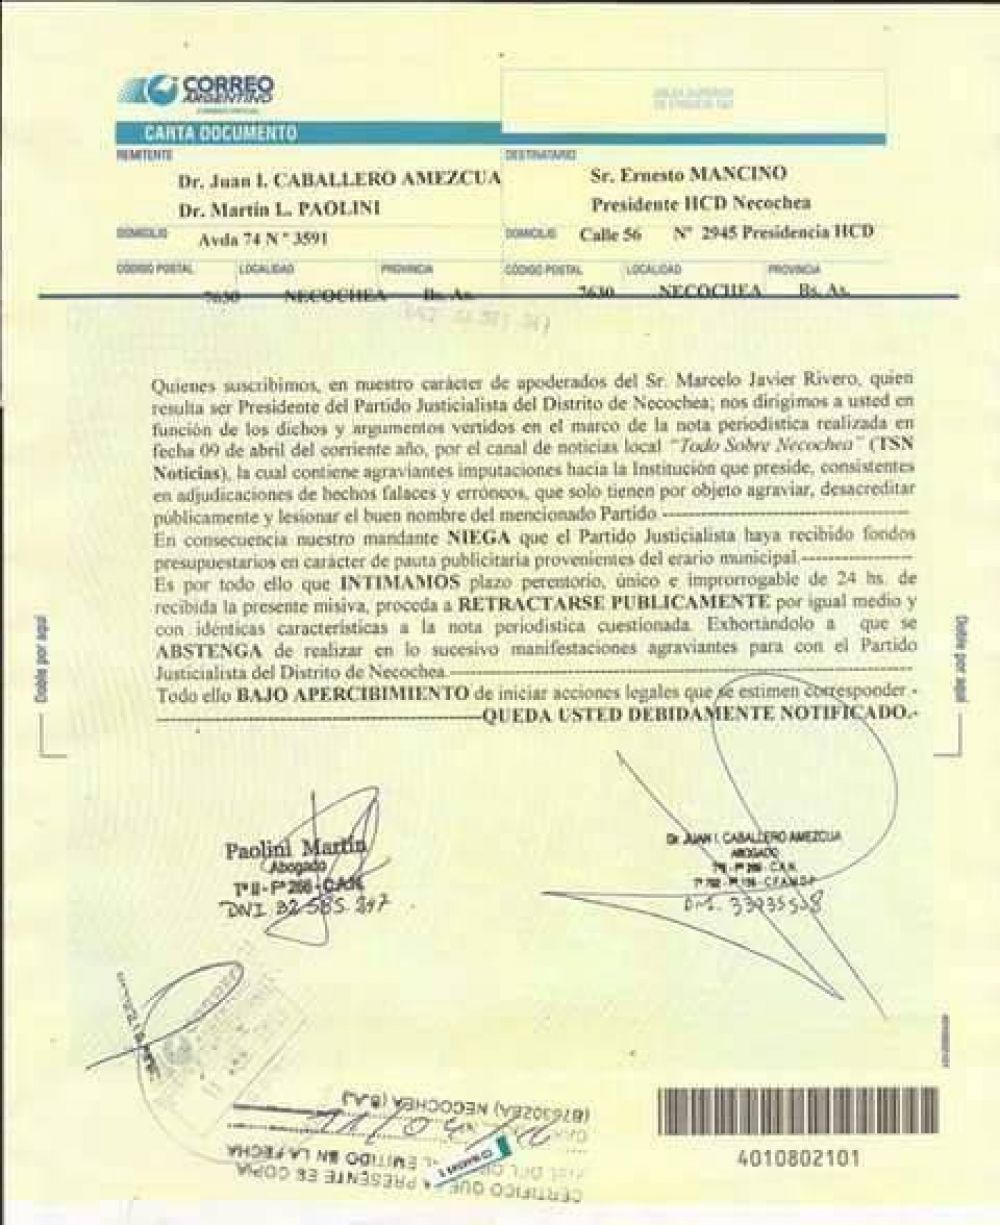 El Partido Justicialista le envi una carta documento a Ernesto Mancino